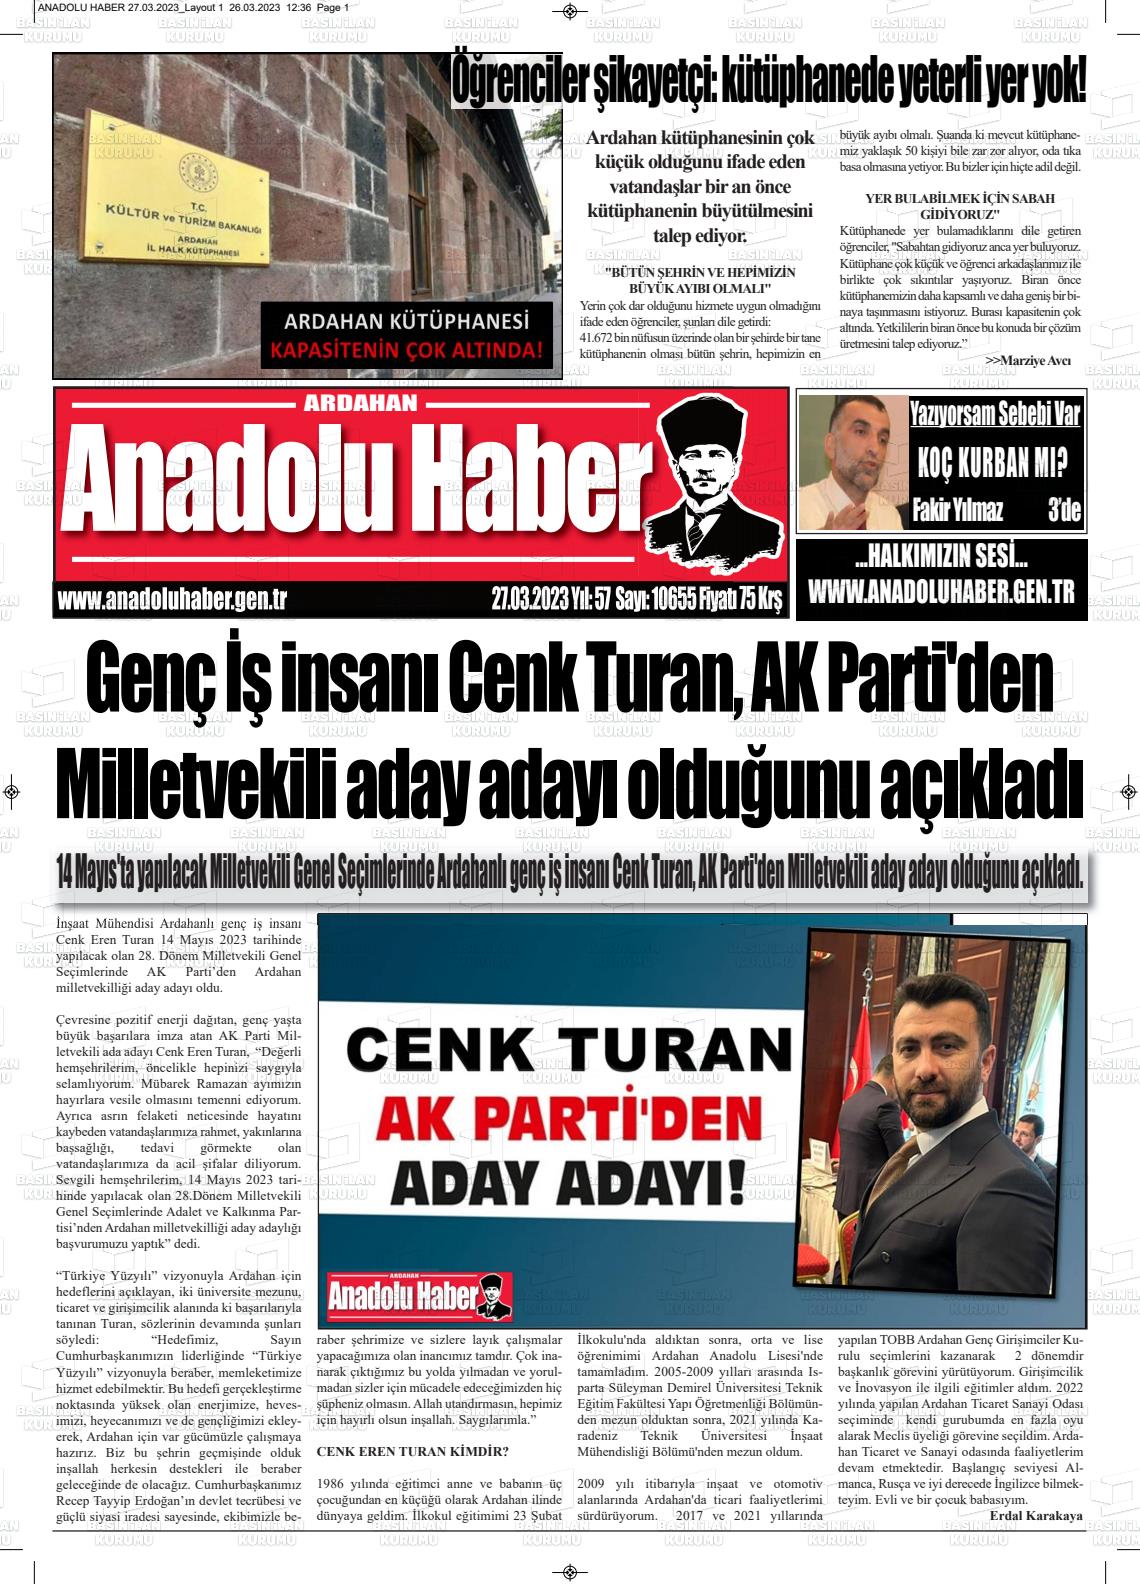 27 Mart 2023 Ardahan Anadolu Haber Gazete Manşeti